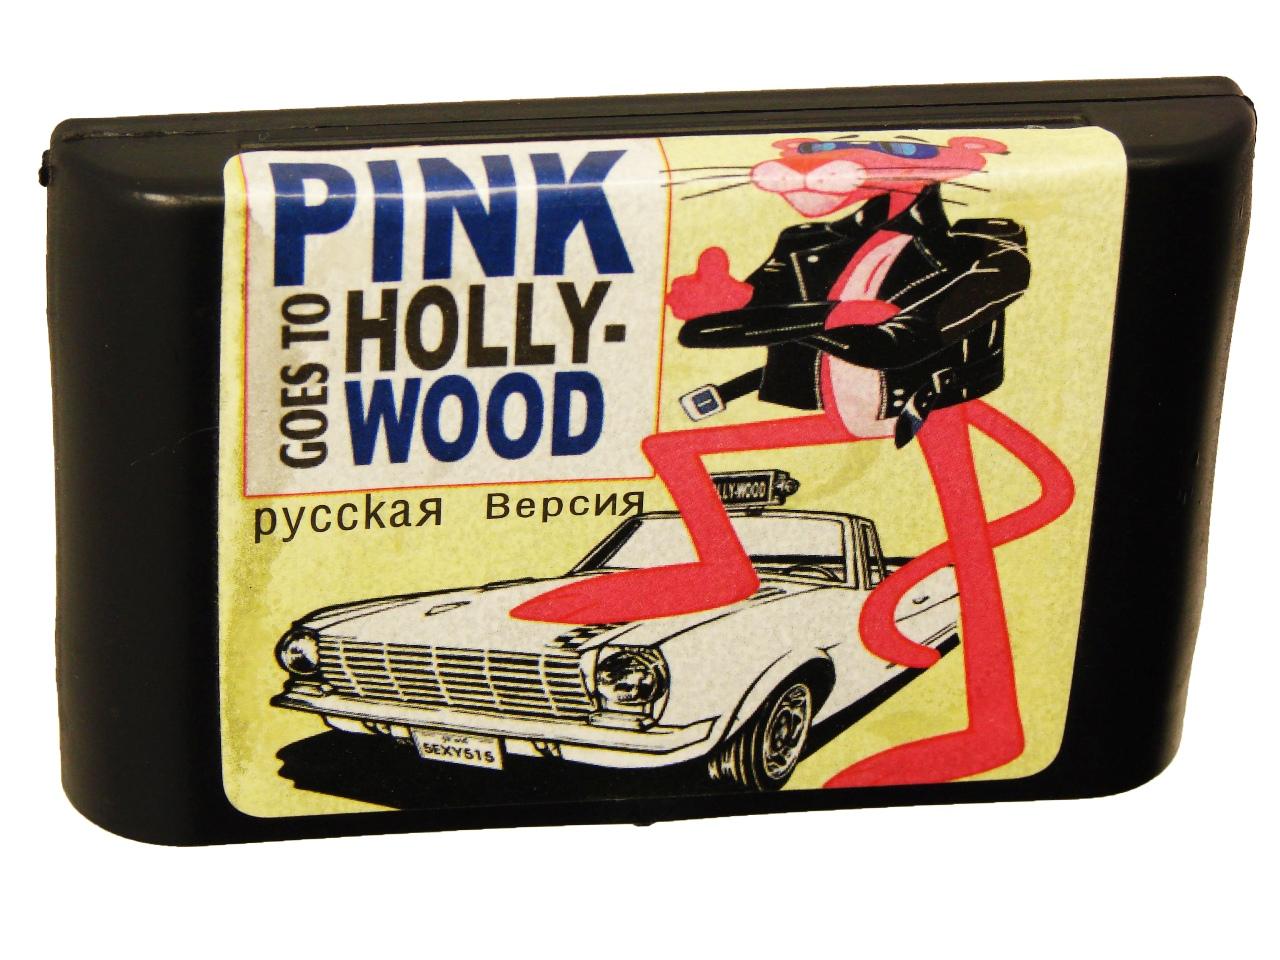   Sega Pink Goes to Hollywood (Sega)